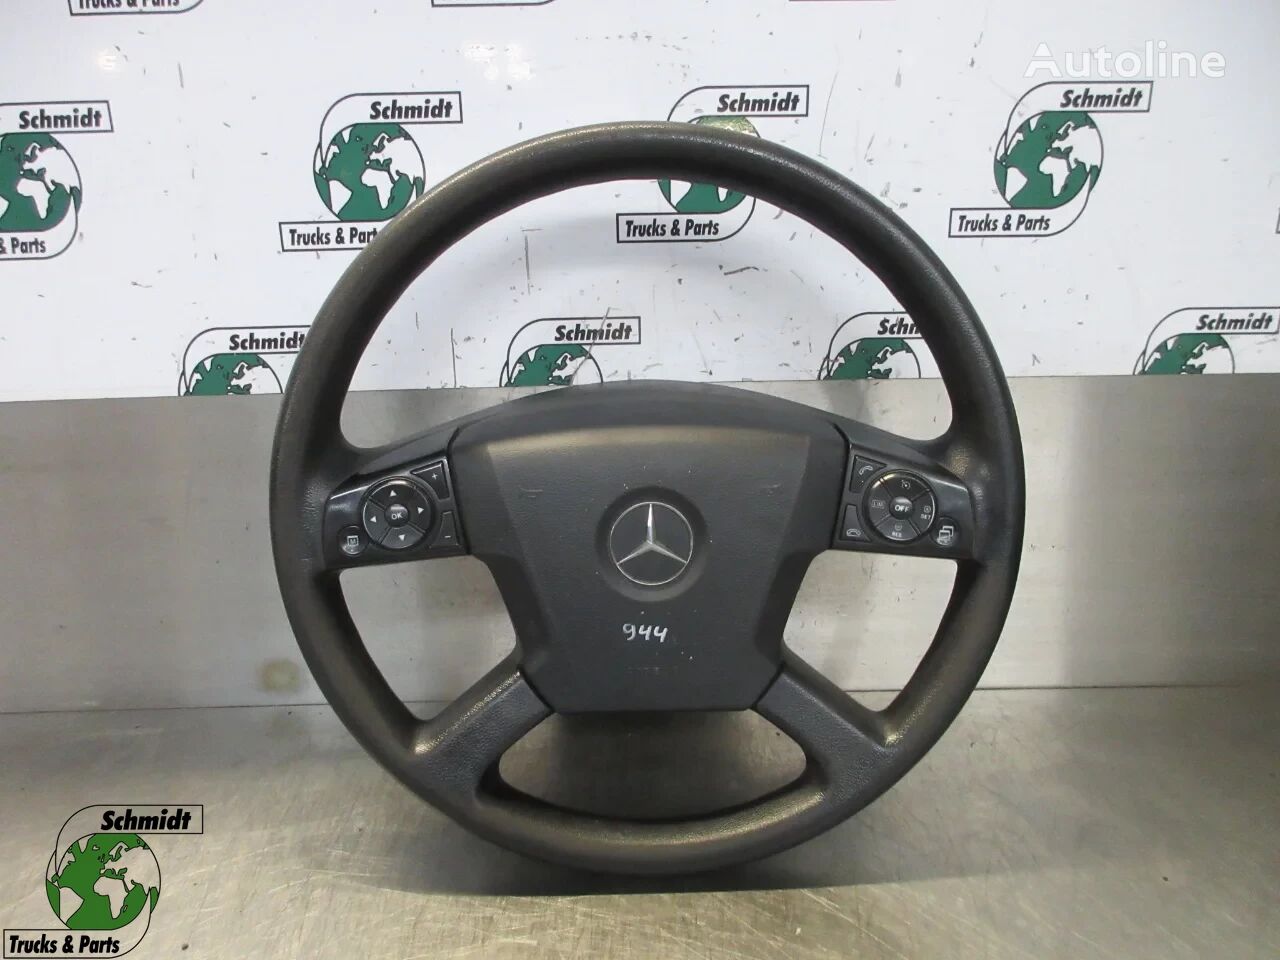 roda kemudi Mercedes-Benz STUURWIEL 1845 MP4 EURO 6 A 960 460 28 03 untuk truk